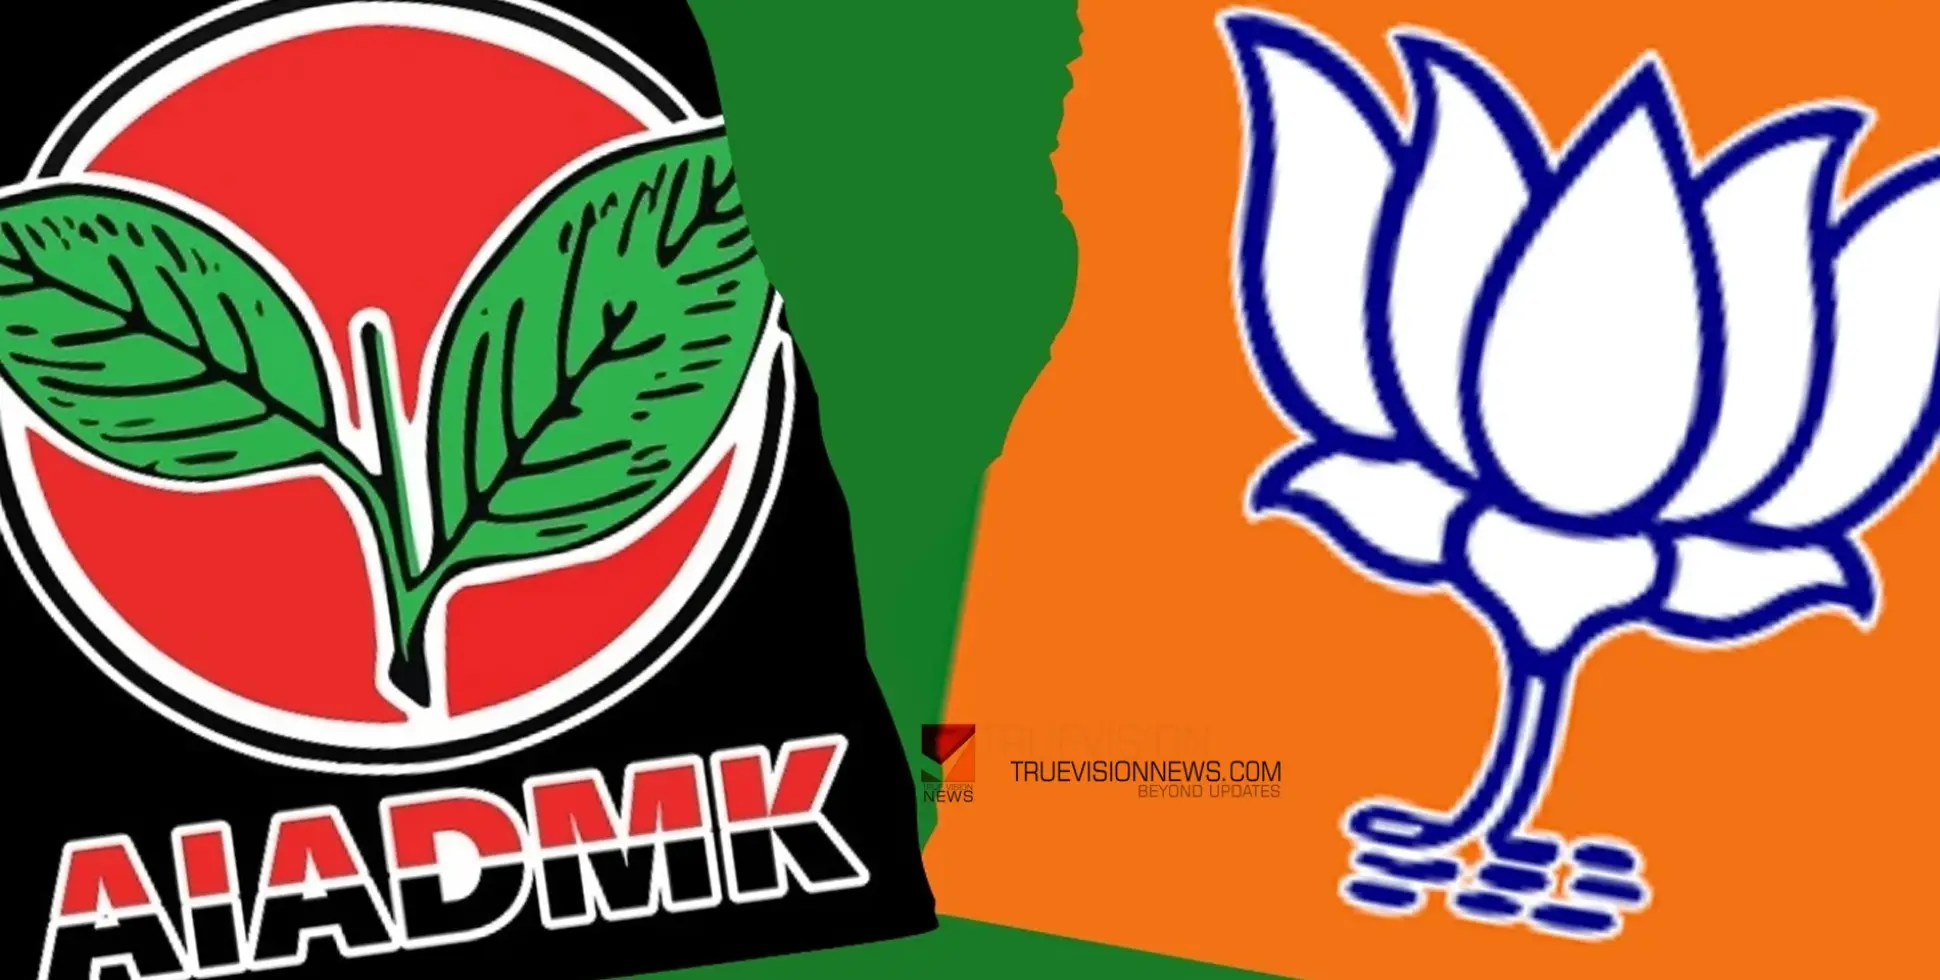 #BJP | തമിഴ്നാട്ടിൽ അണ്ണാ ഡി.എം.കെ എൻ.ഡി.എ വിട്ടു